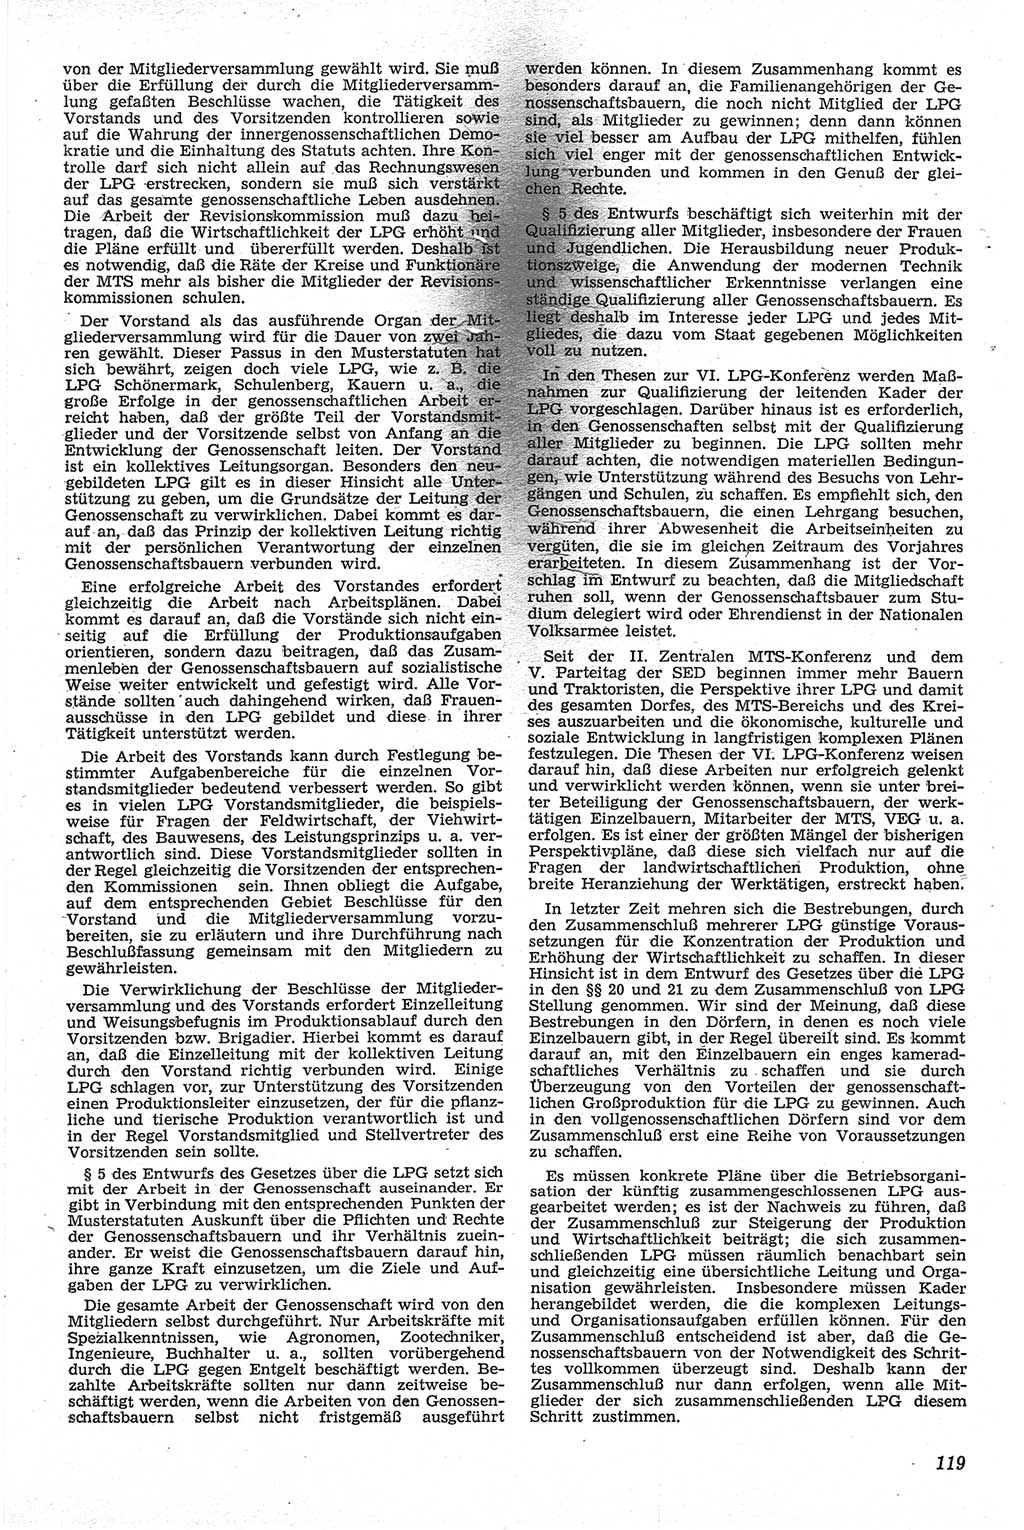 Neue Justiz (NJ), Zeitschrift für Recht und Rechtswissenschaft [Deutsche Demokratische Republik (DDR)], 13. Jahrgang 1959, Seite 119 (NJ DDR 1959, S. 119)